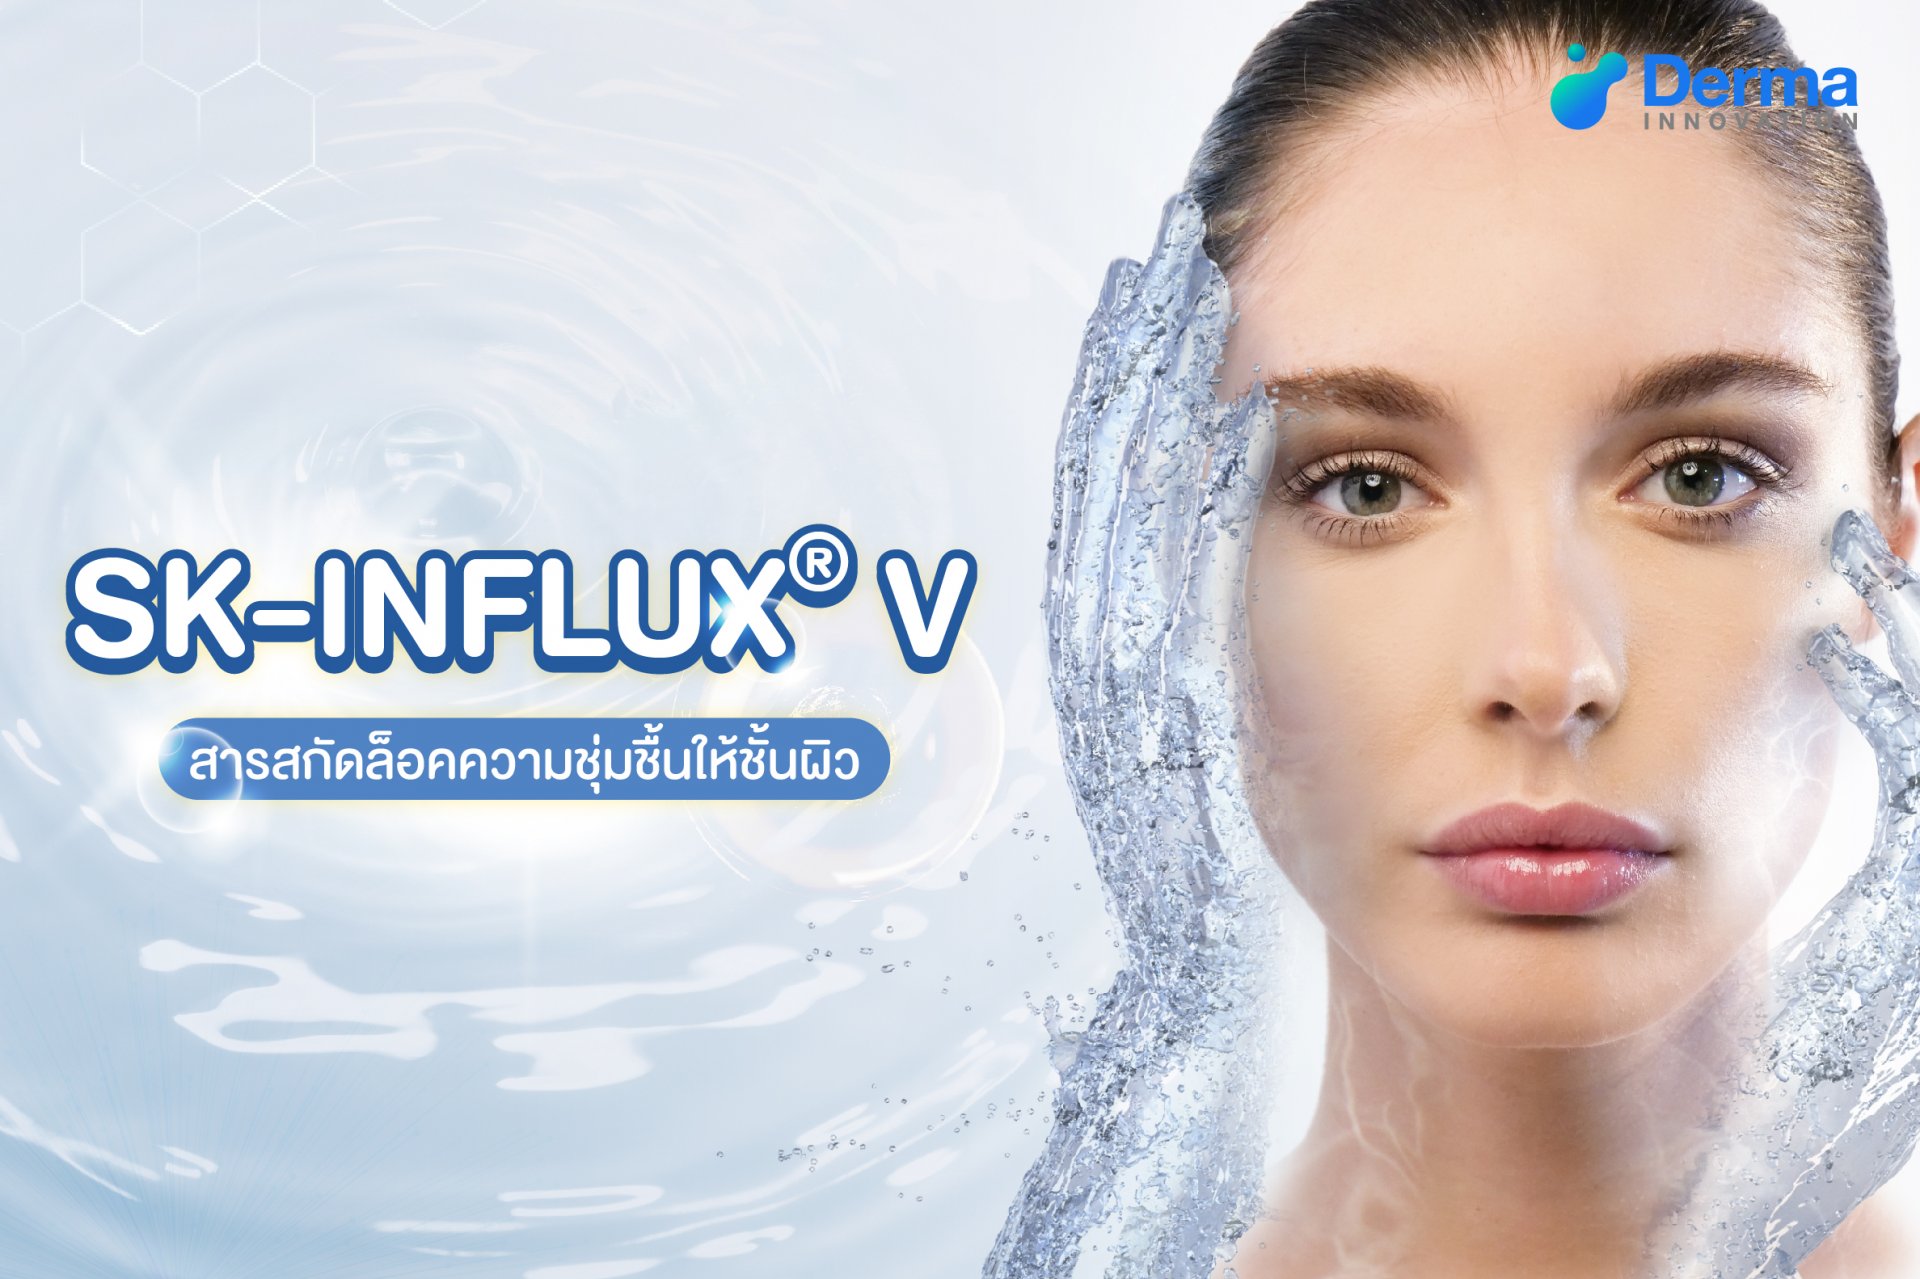 SK-INFLUX® V สารสกัดล็อคความชุ่มชื้นให้ชั้นผิว